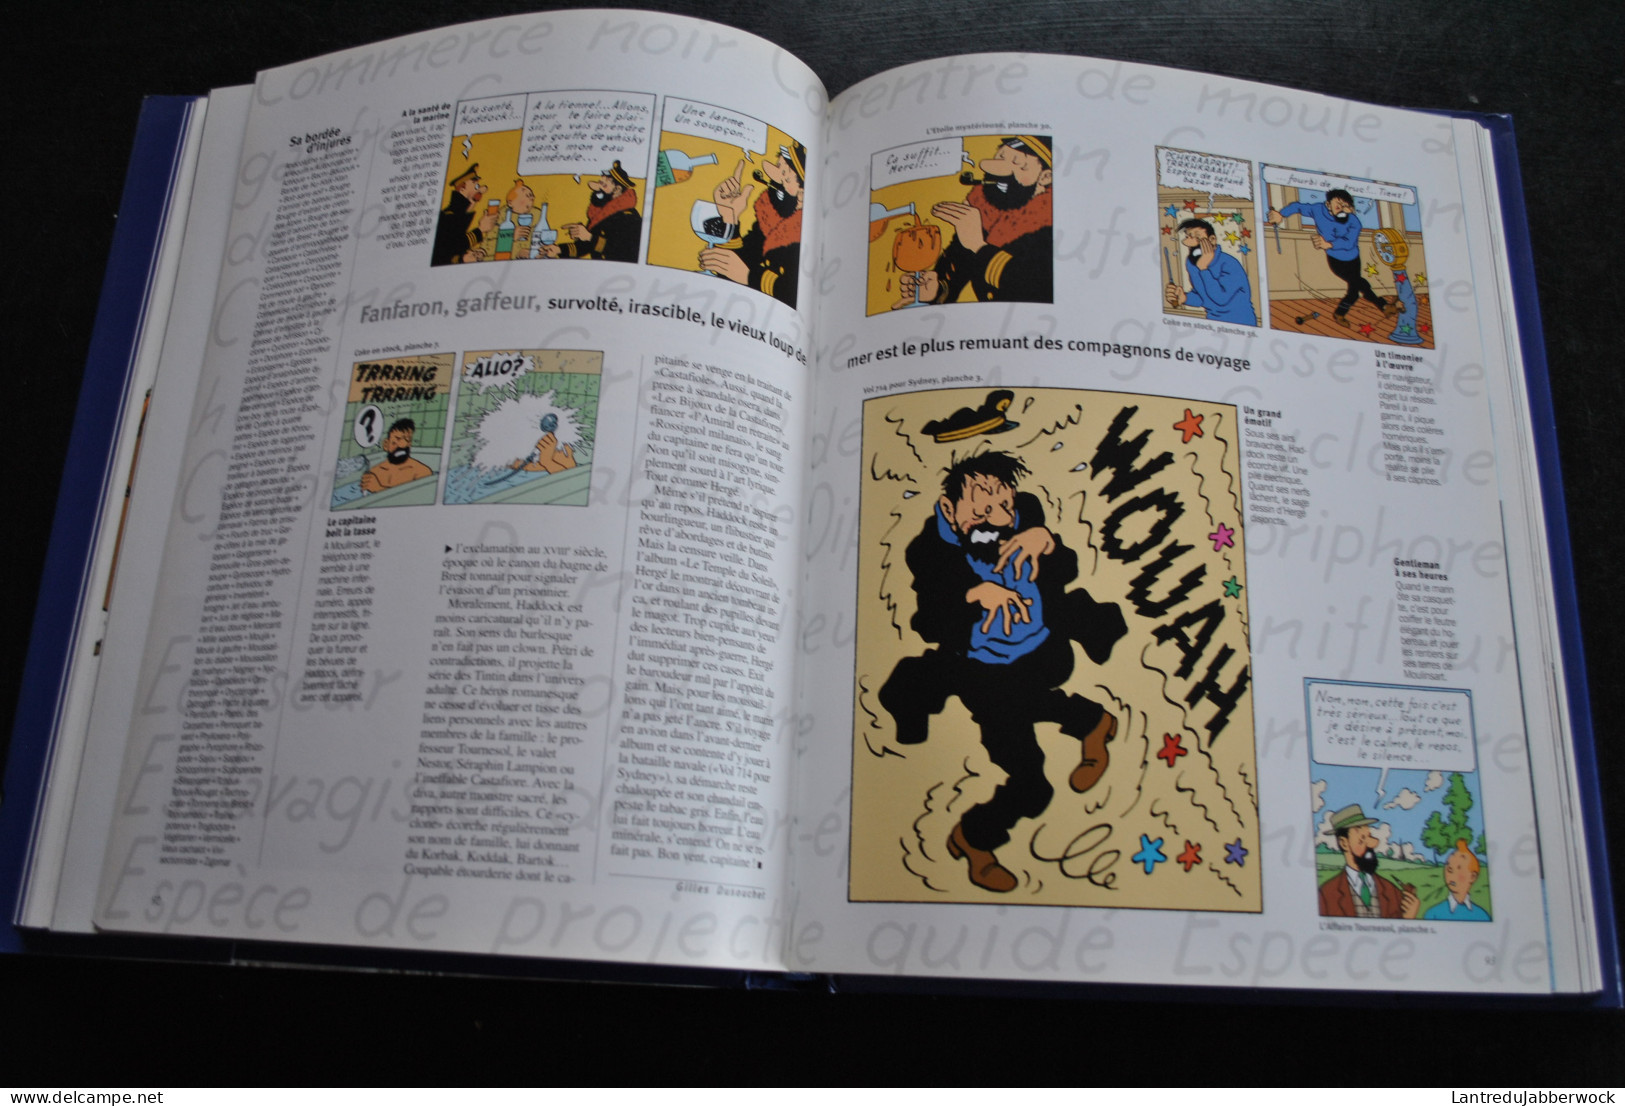 L'ALBUM GEO Tintin Grand Voyageur du Siècle Hergé Milou Tournesol Haddock Frise poster dépliant jaquette 